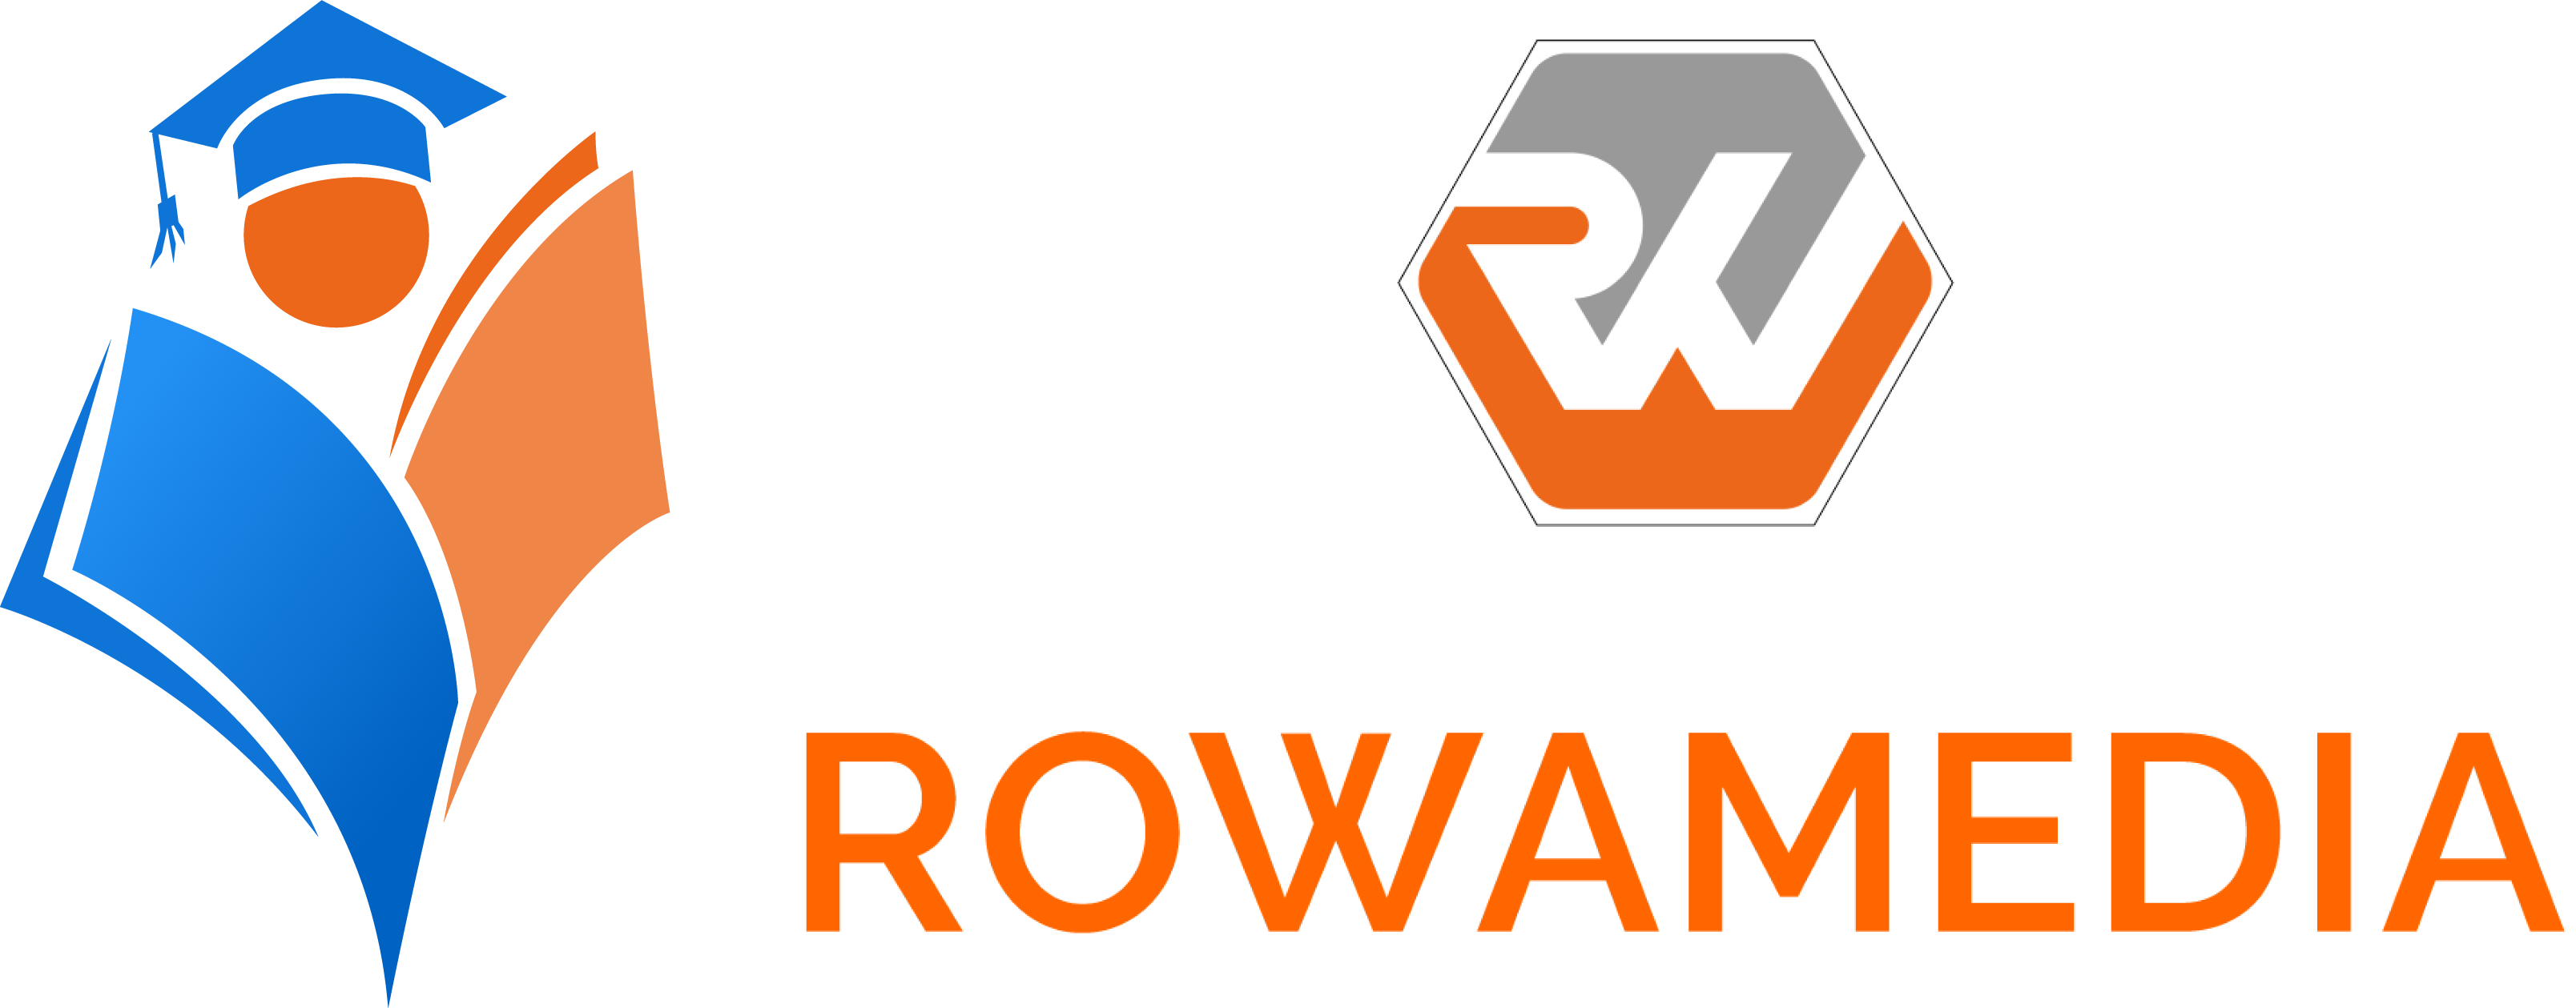 ROWAMEDIA Logo